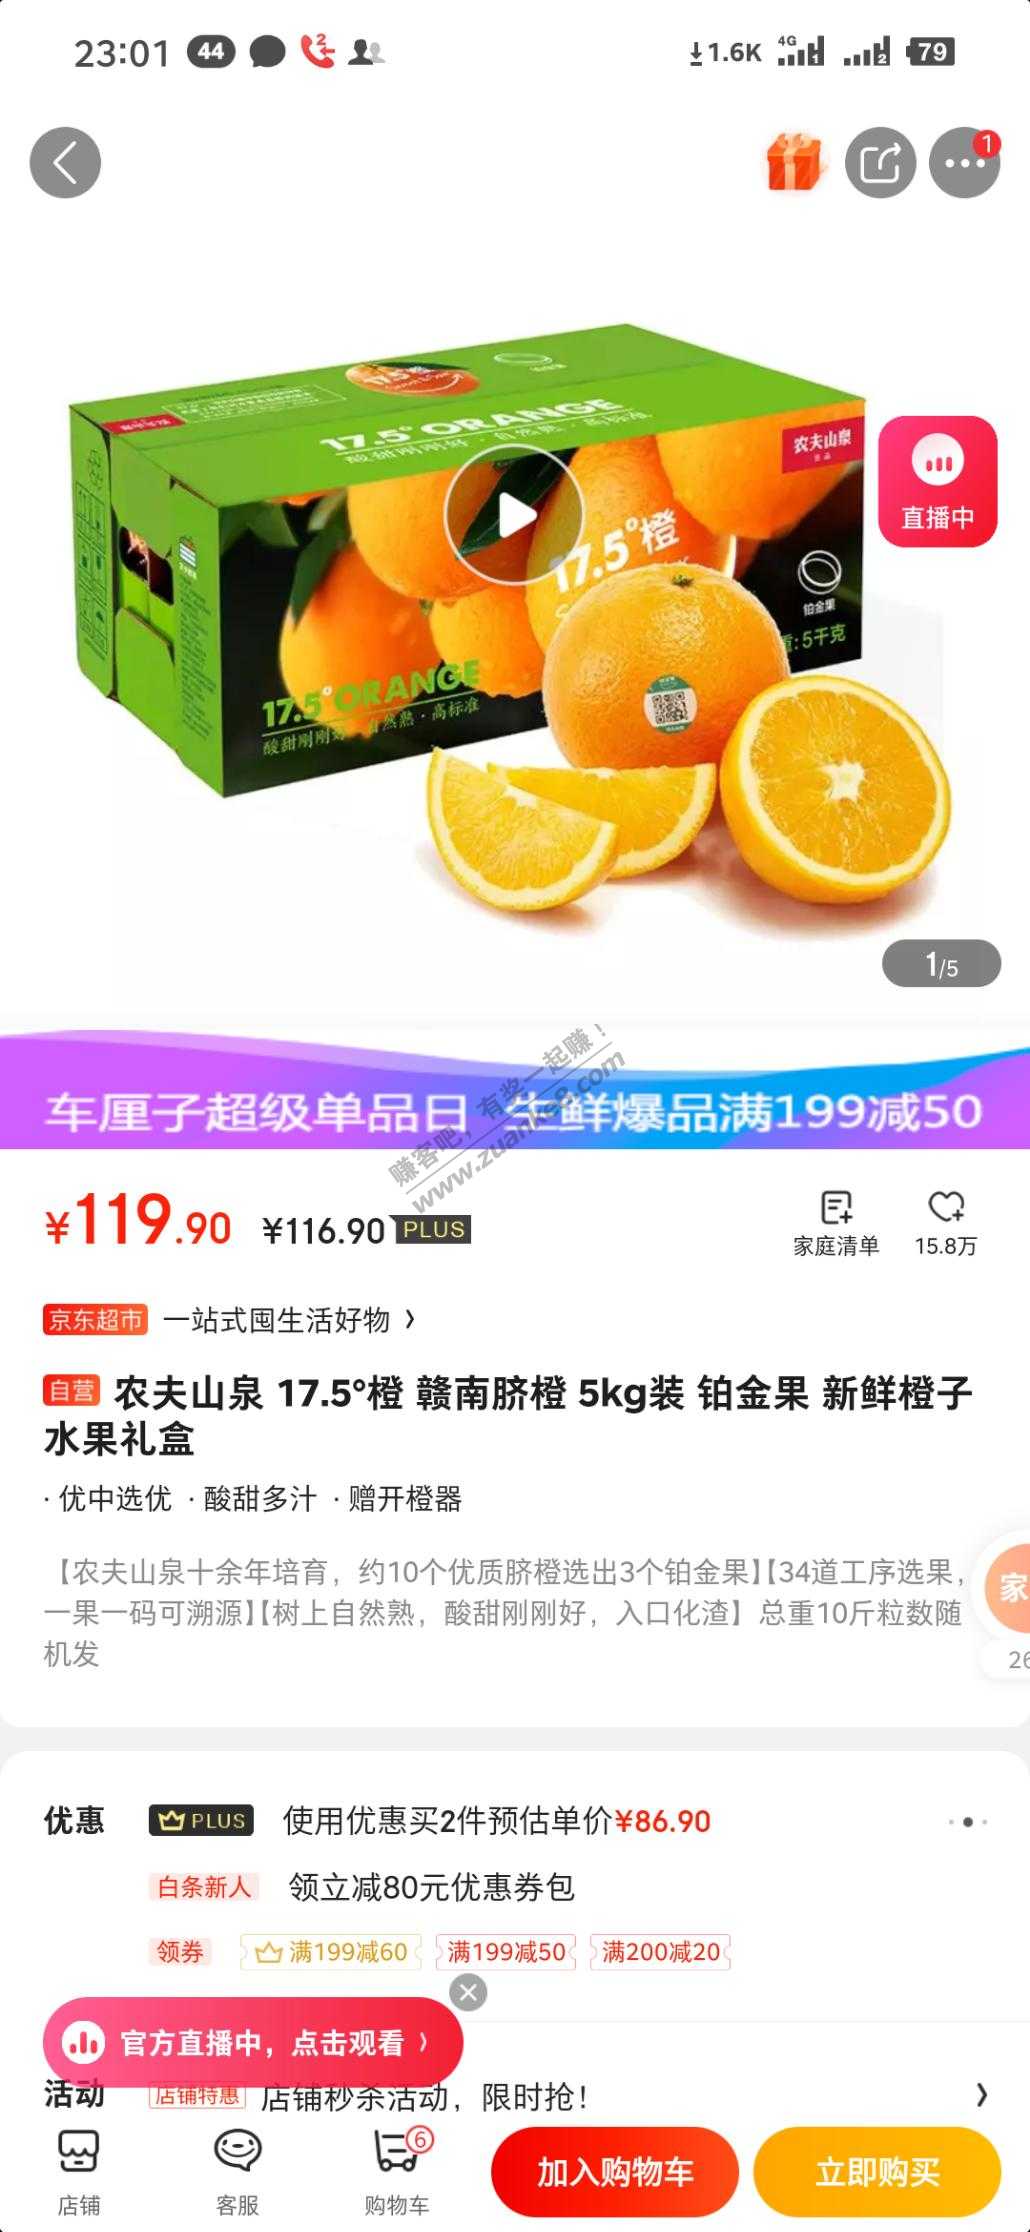 问个农夫橙的区别-买过的网友帮忙解毒下-惠小助(52huixz.com)